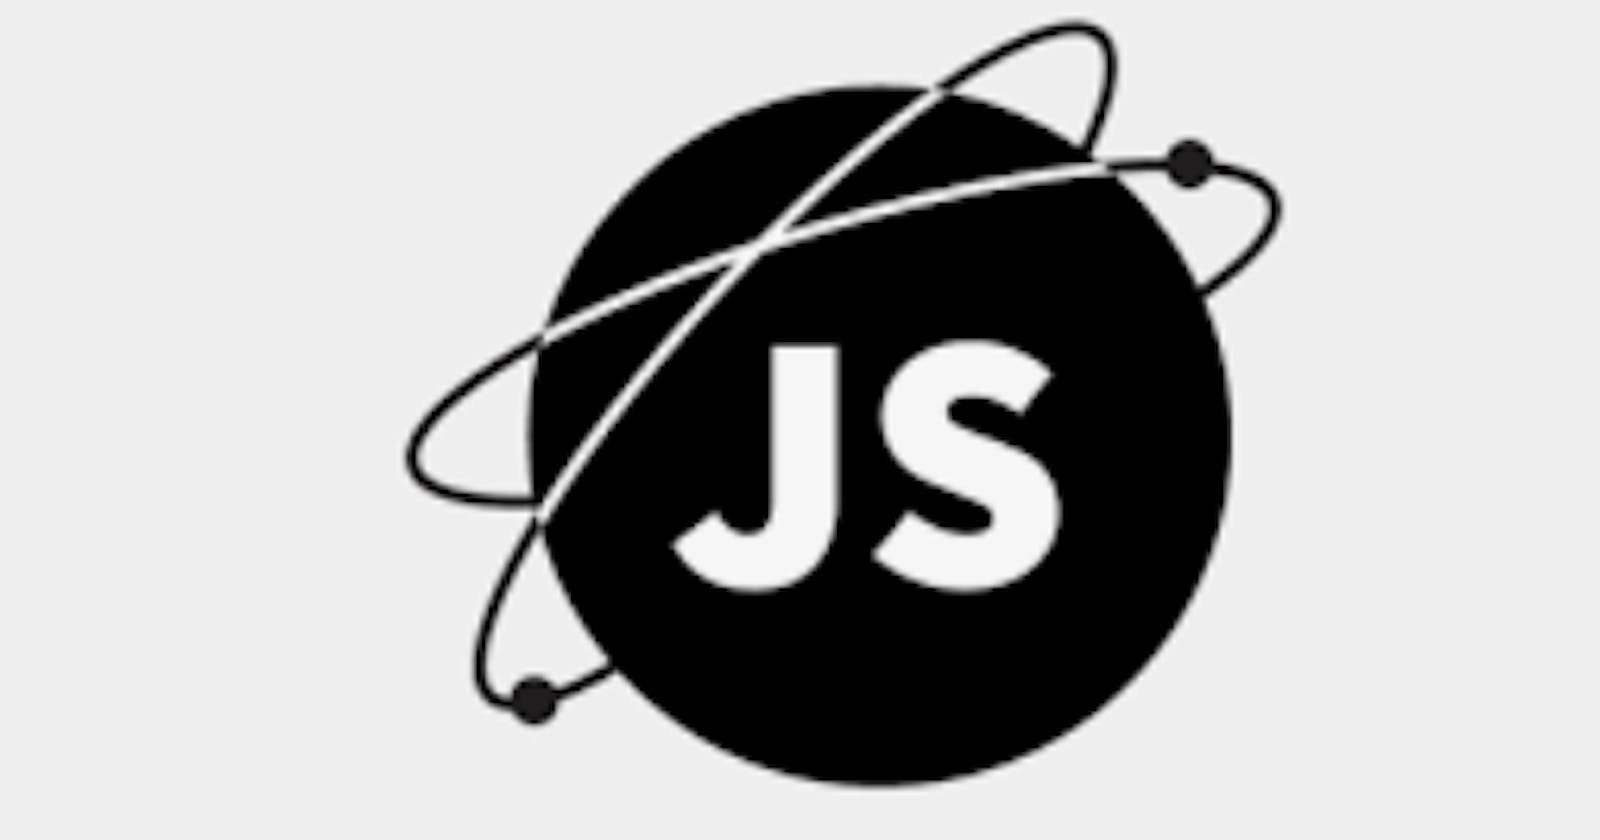 Javascript split, splice, join methods